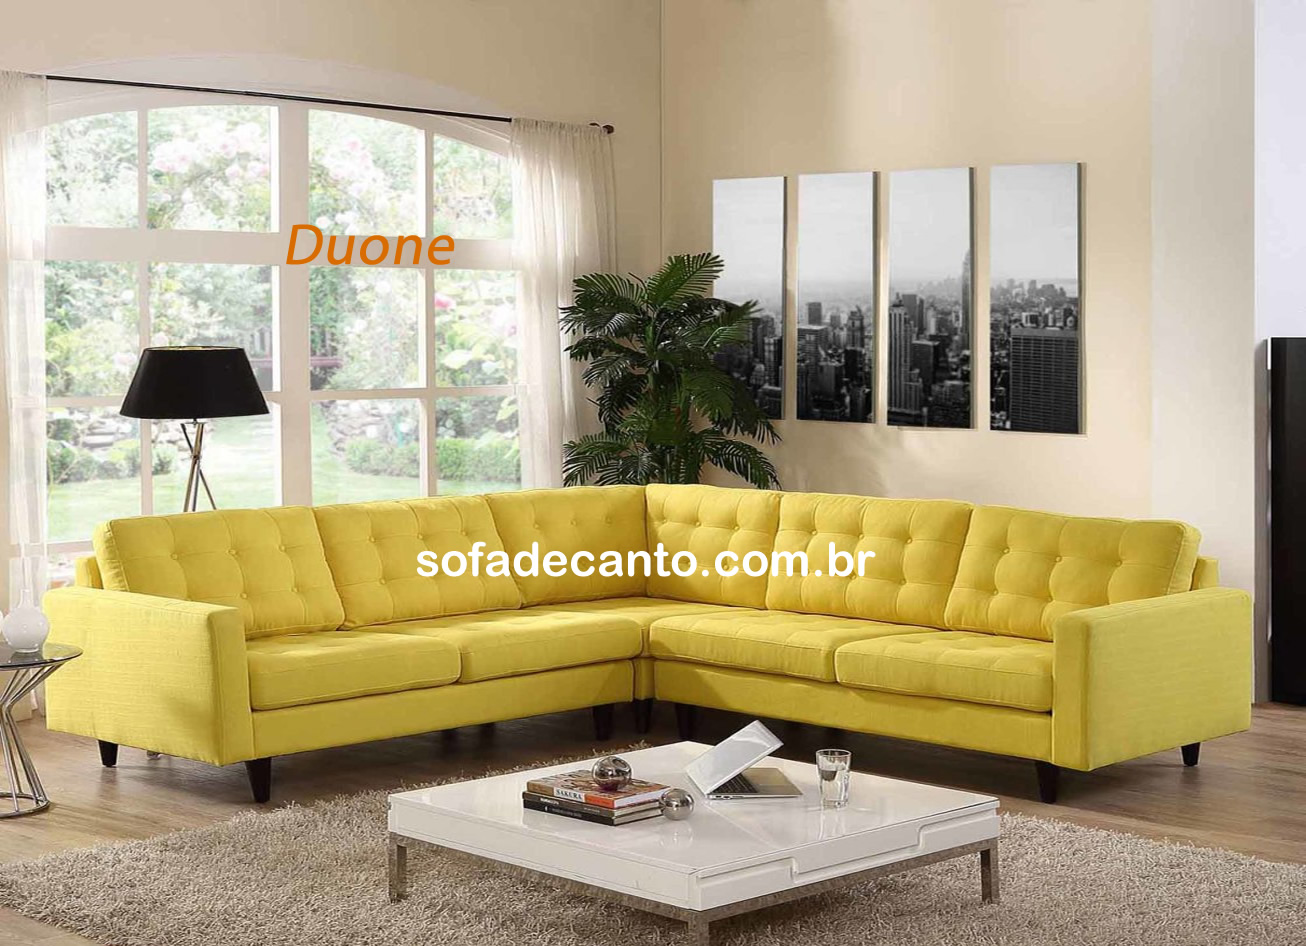 Sofá de Canto - 55 modelos da nova coleção 2021 - Vendas Online |  sofadecanto.com.br